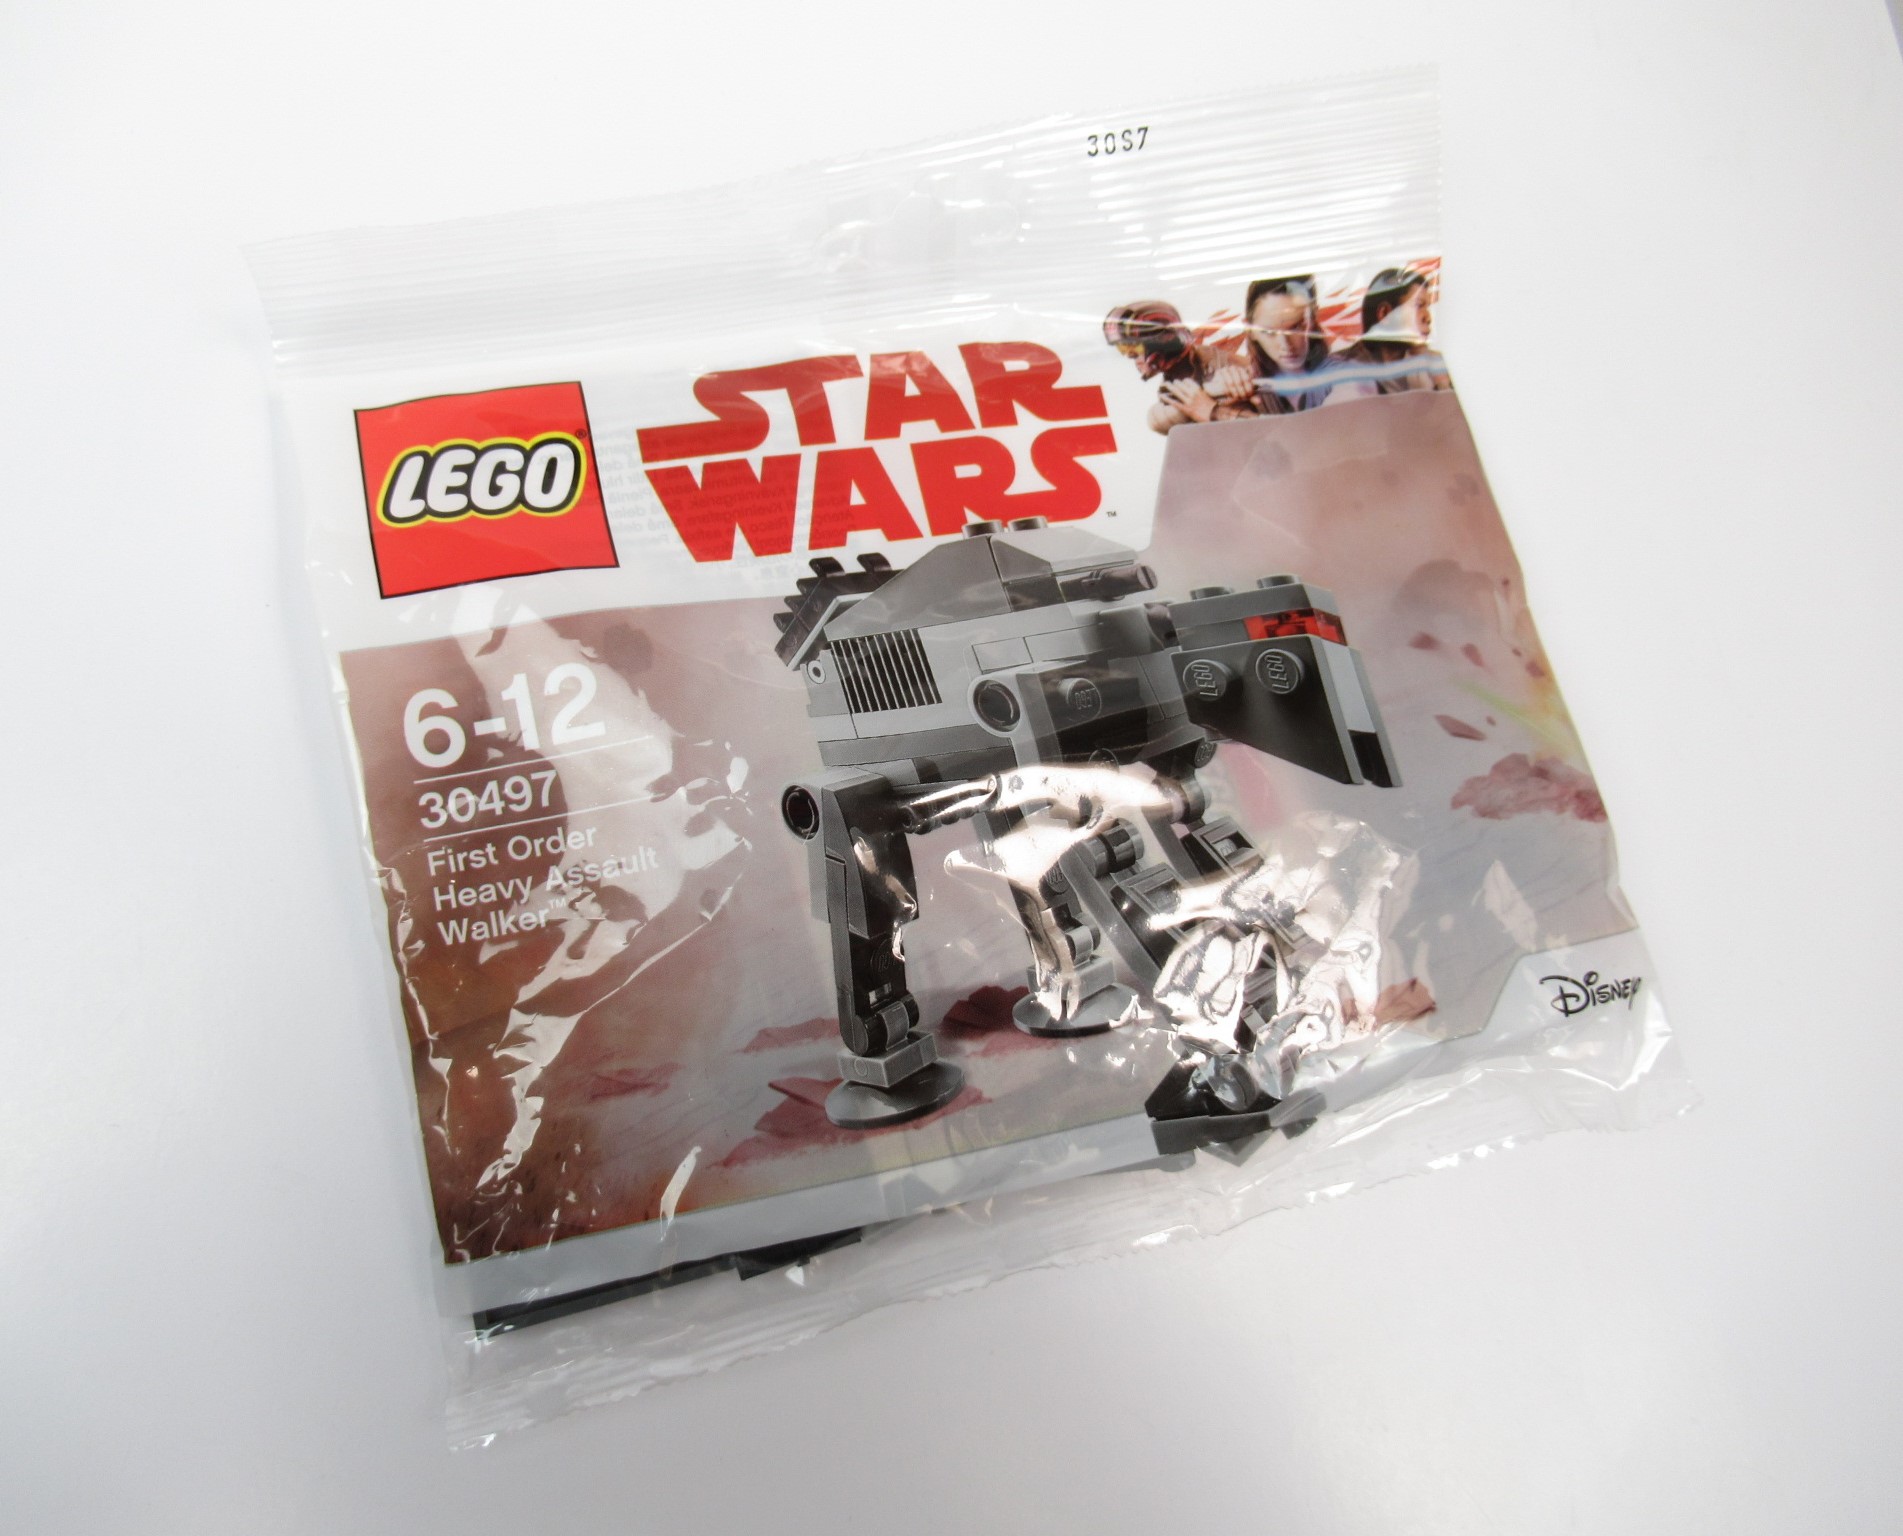 Afbeelding van LEGO Star Wars 30497 First Order Heavy Assault Walker Polybag